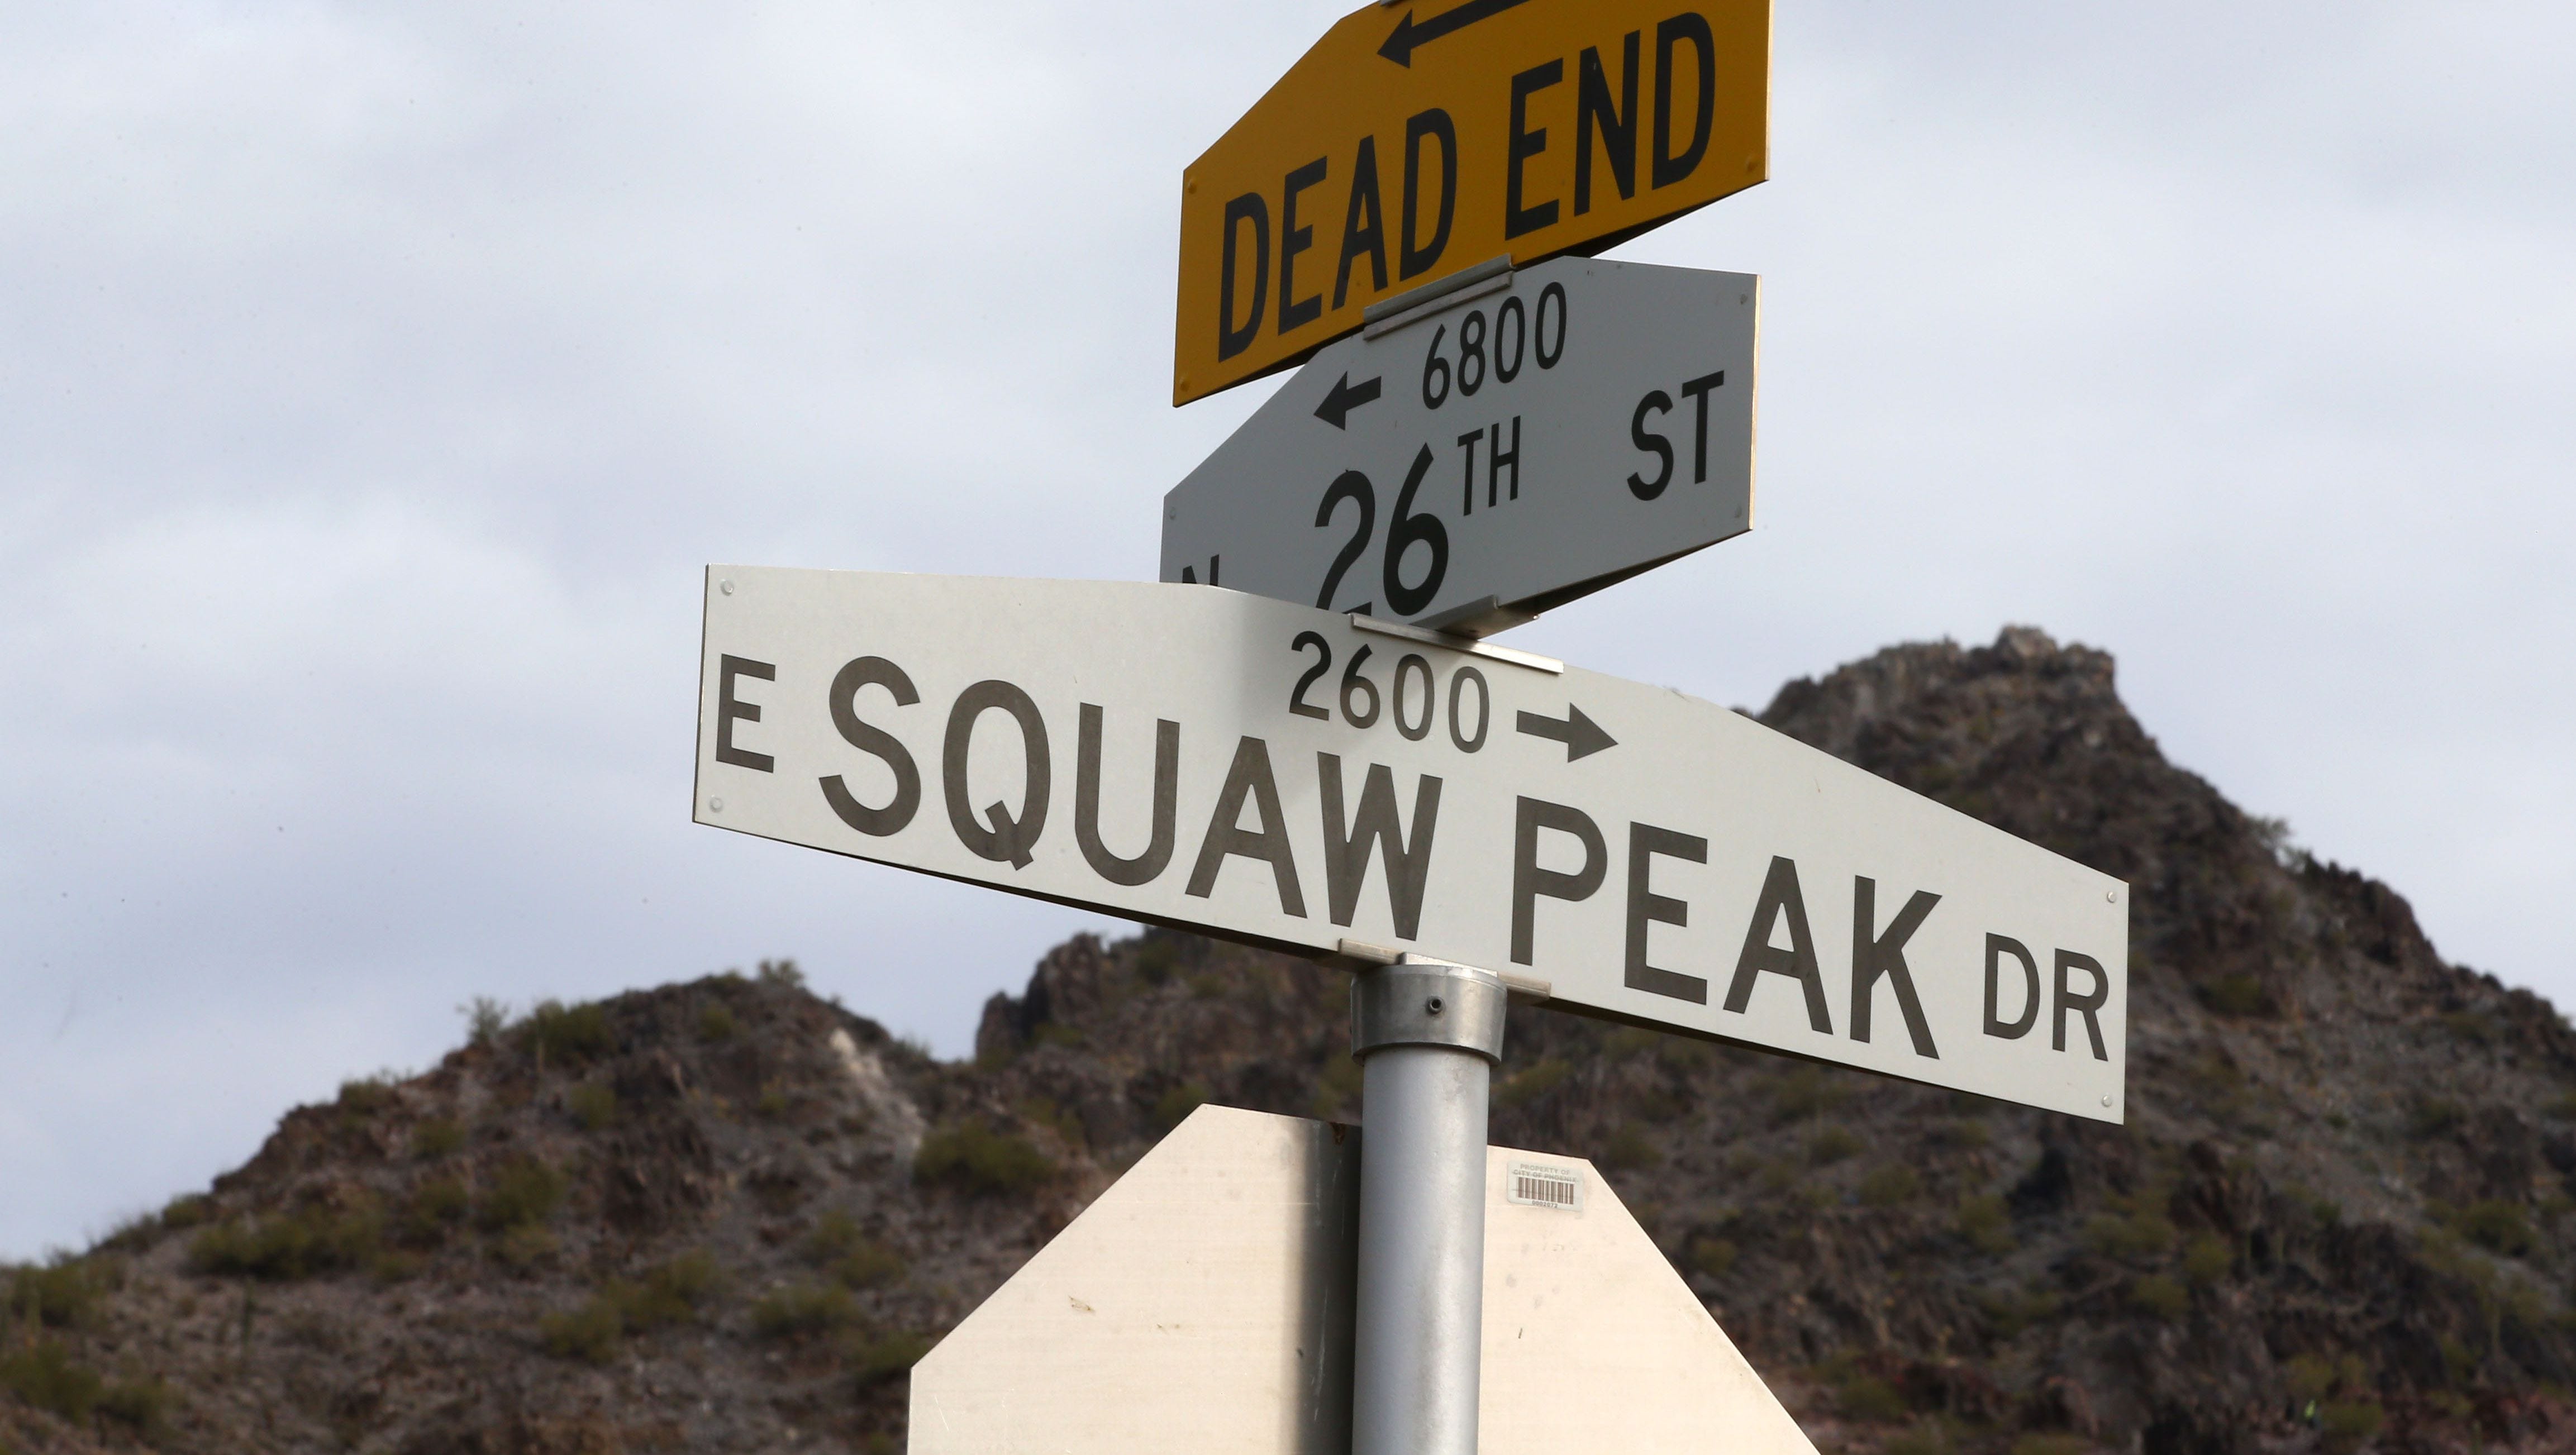 Squaw Peak Drive street sign in Phoenix